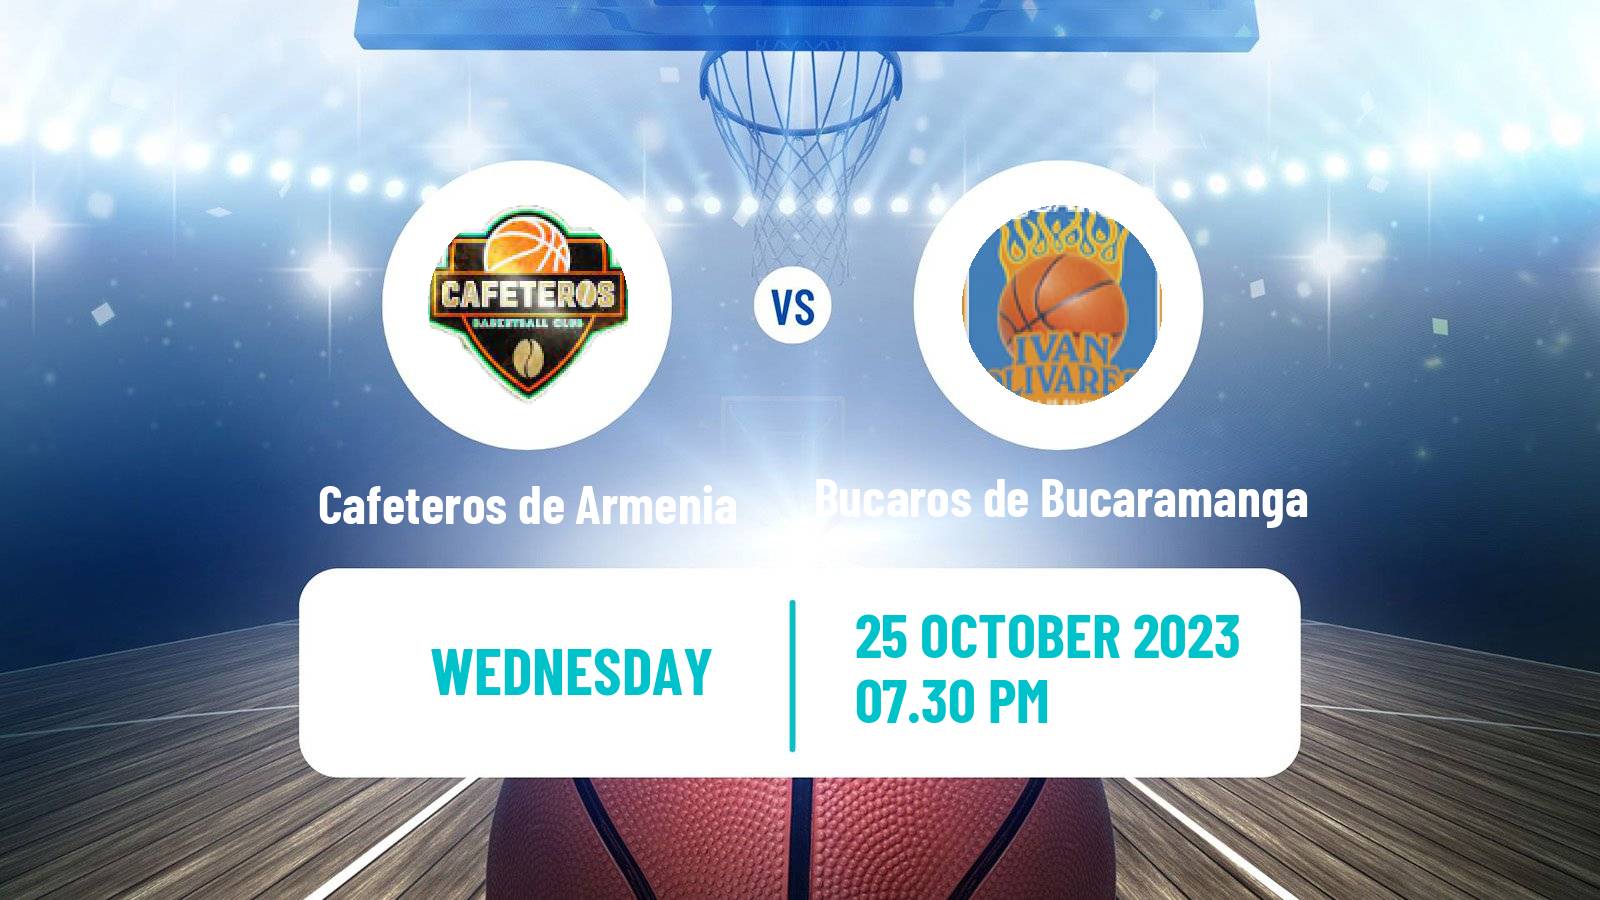 Basketball Colombian LBP Basketball Cafeteros de Armenia - Bucaros de Bucaramanga